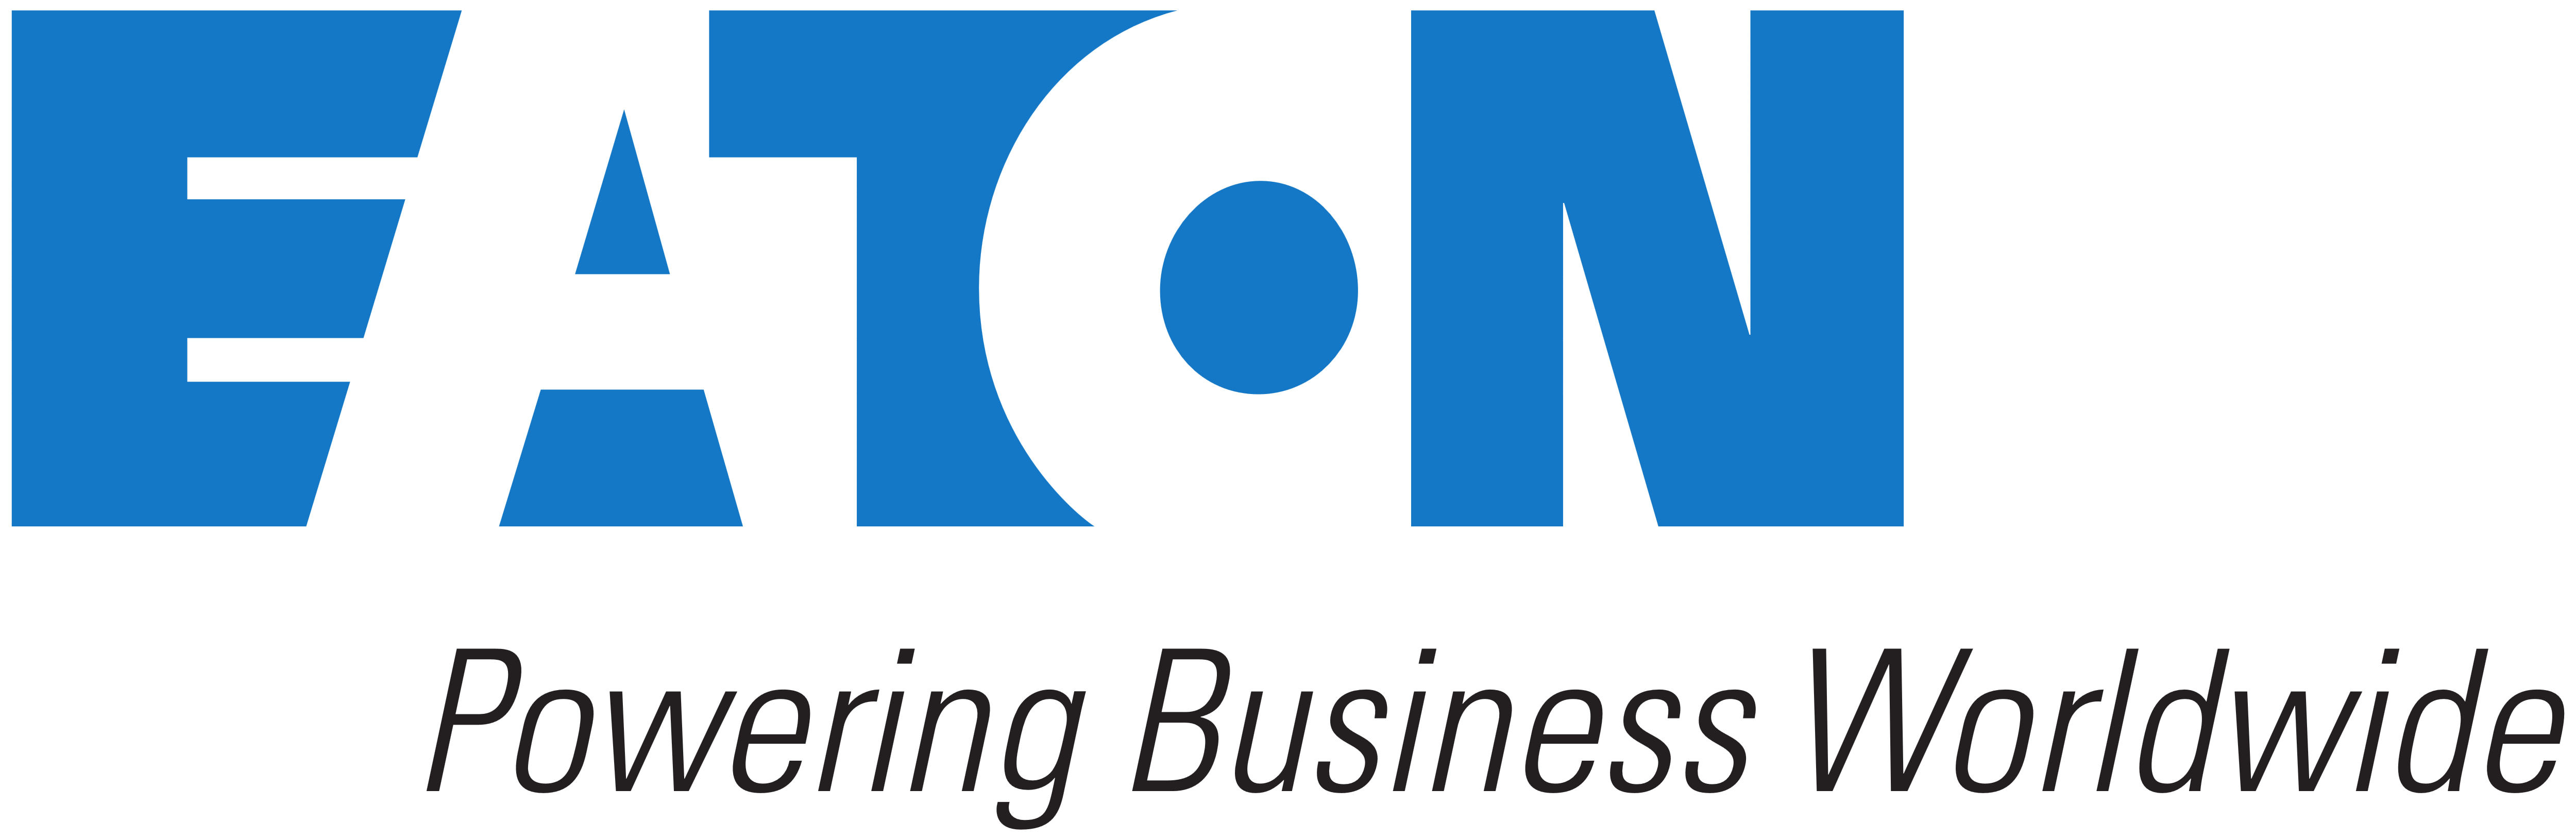 Eaton logo - Logos Download